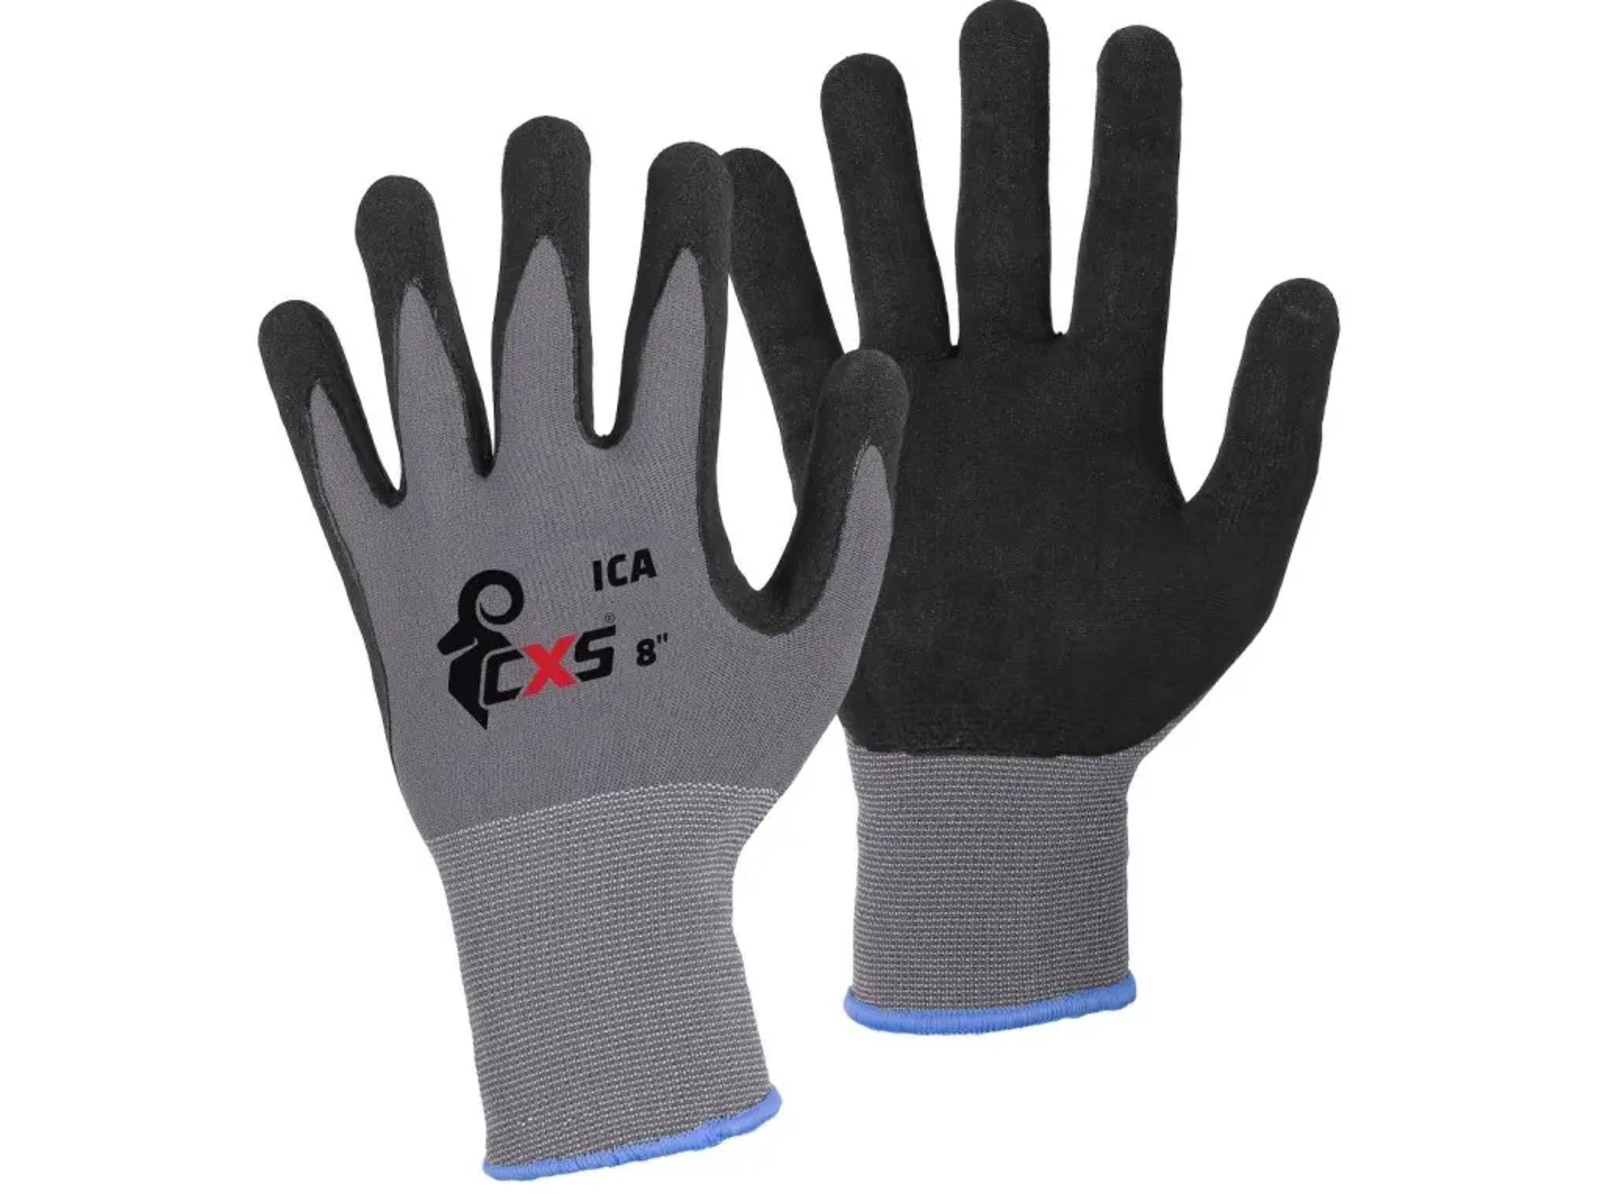 Povrstvené rukavice CXS Ica - veľkosť: 9/L, farba: sivá/čierna